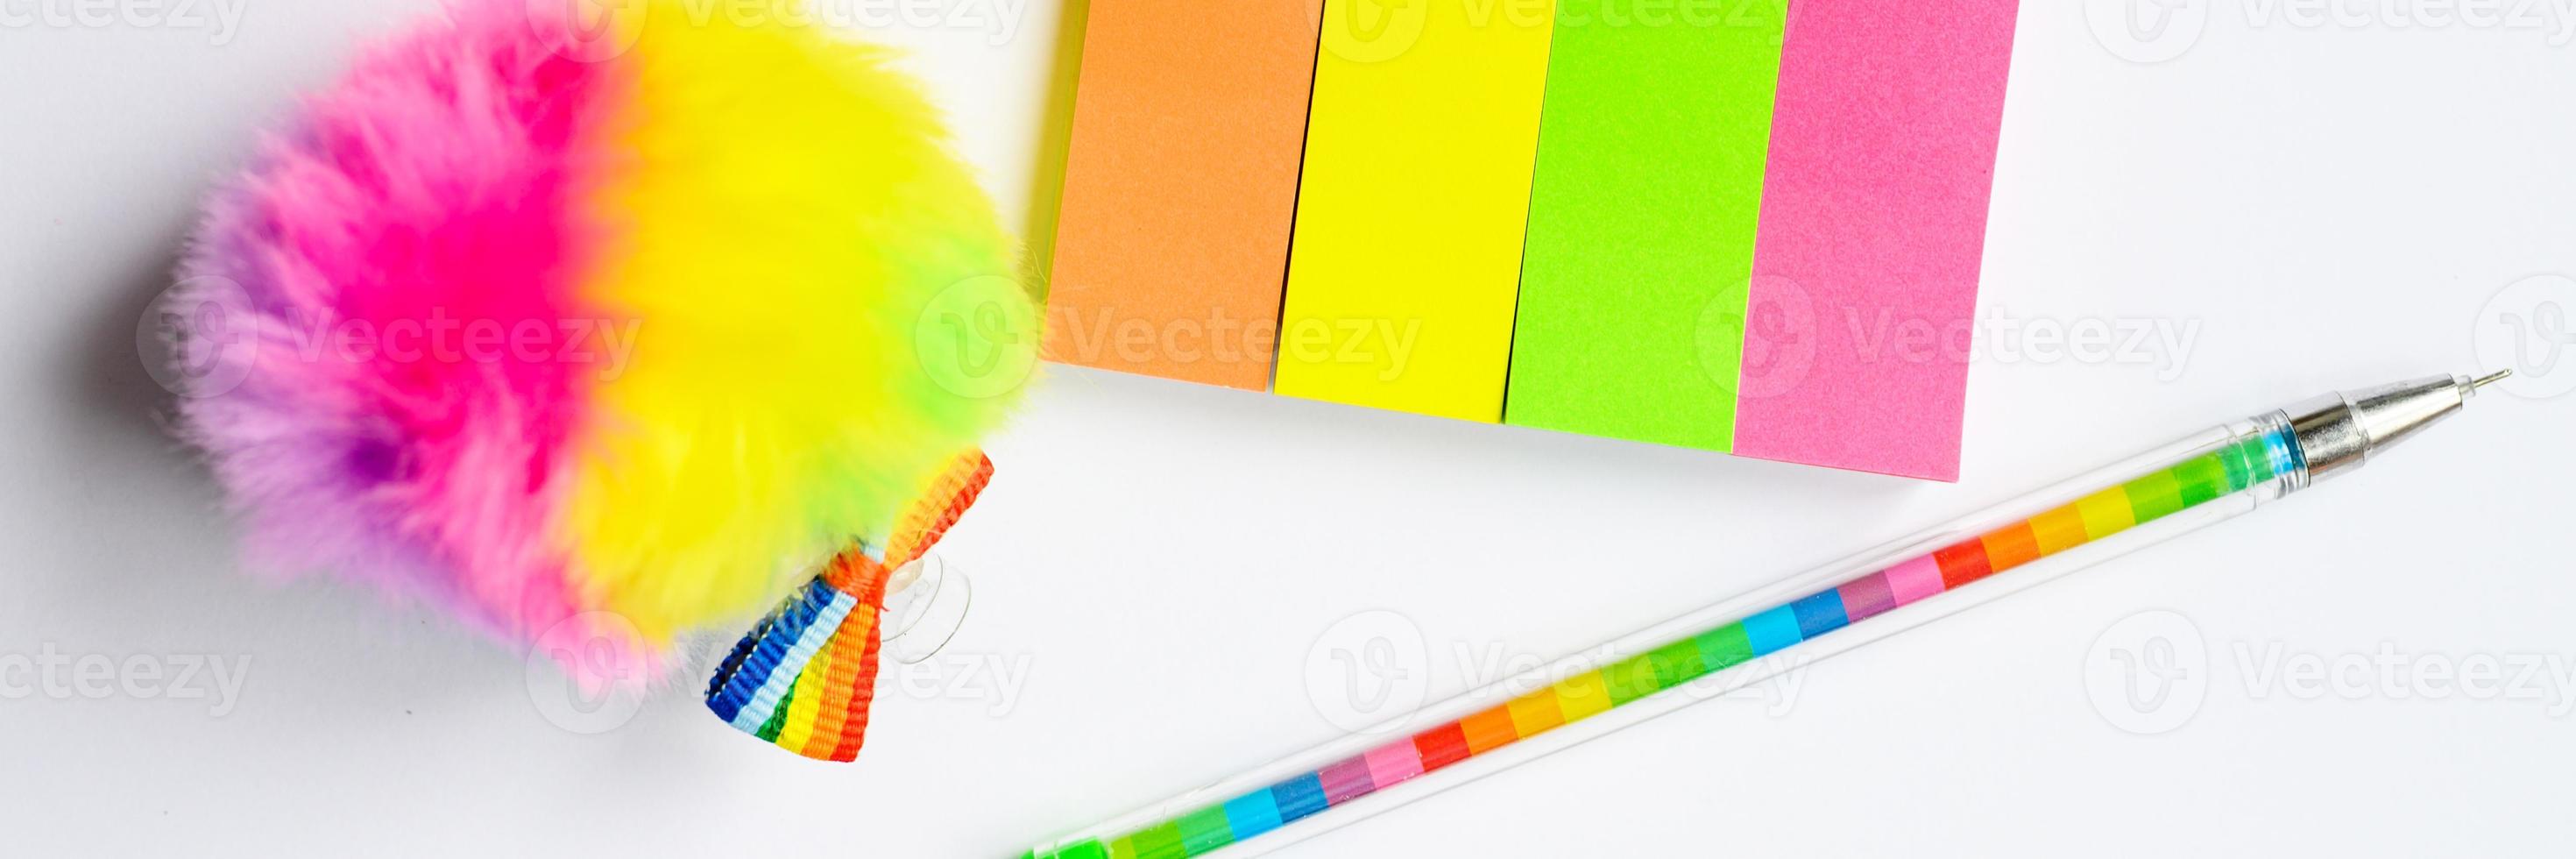 adesivi multicolori e una penna su sfondo bianco foto